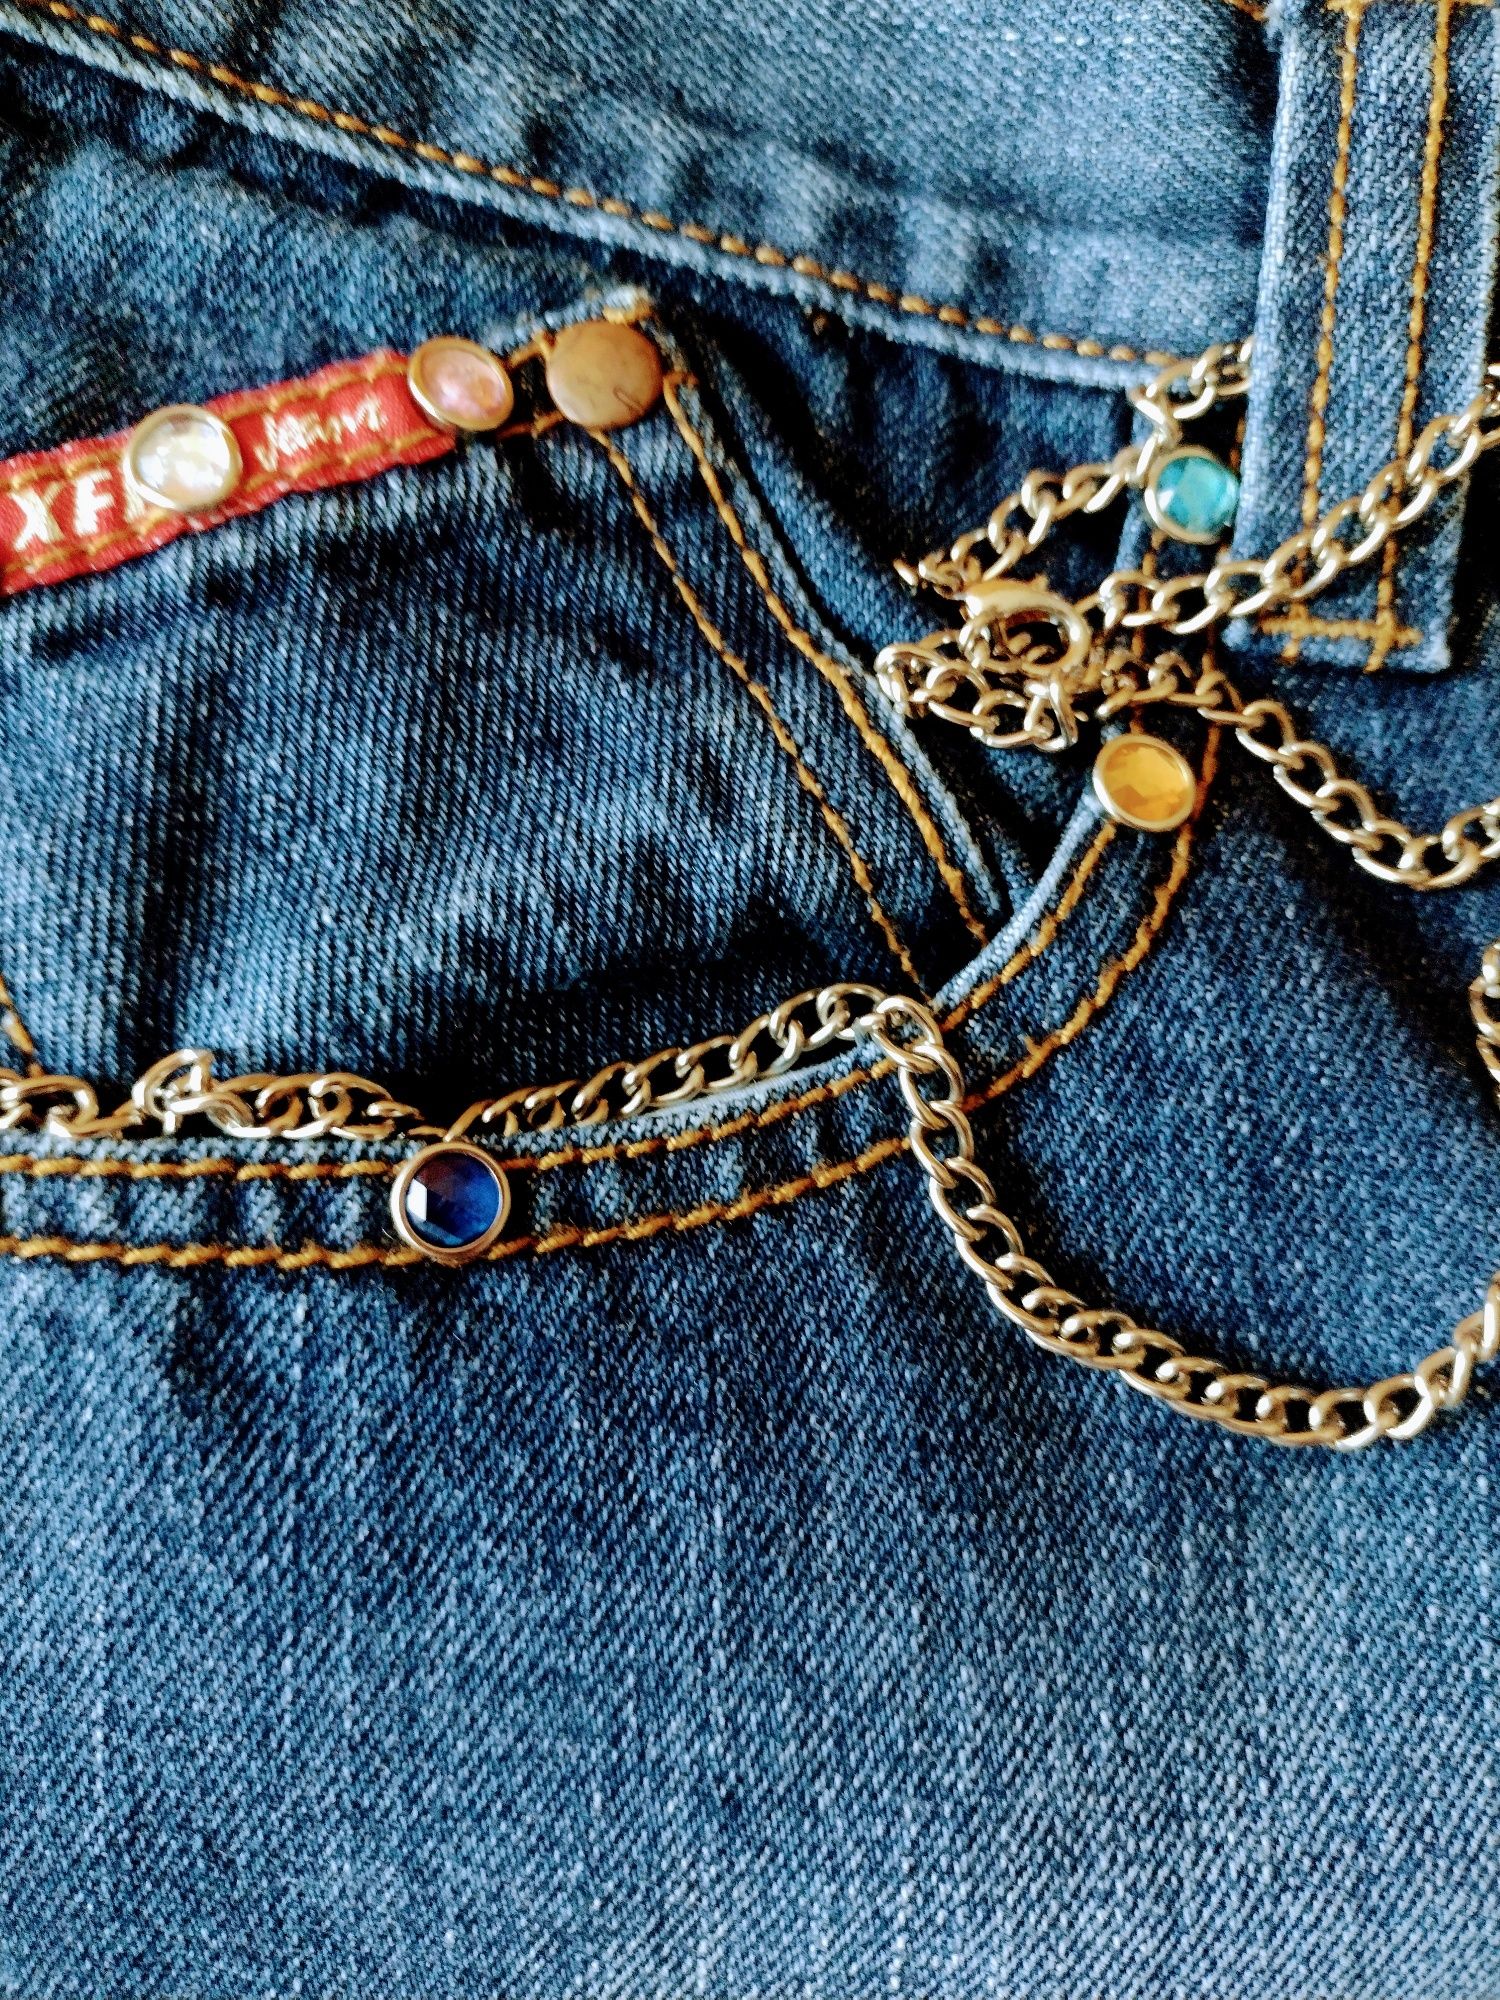 spodnie dżinsowe damskie lub męskie z ozdobnymi aplikacjami r.XL